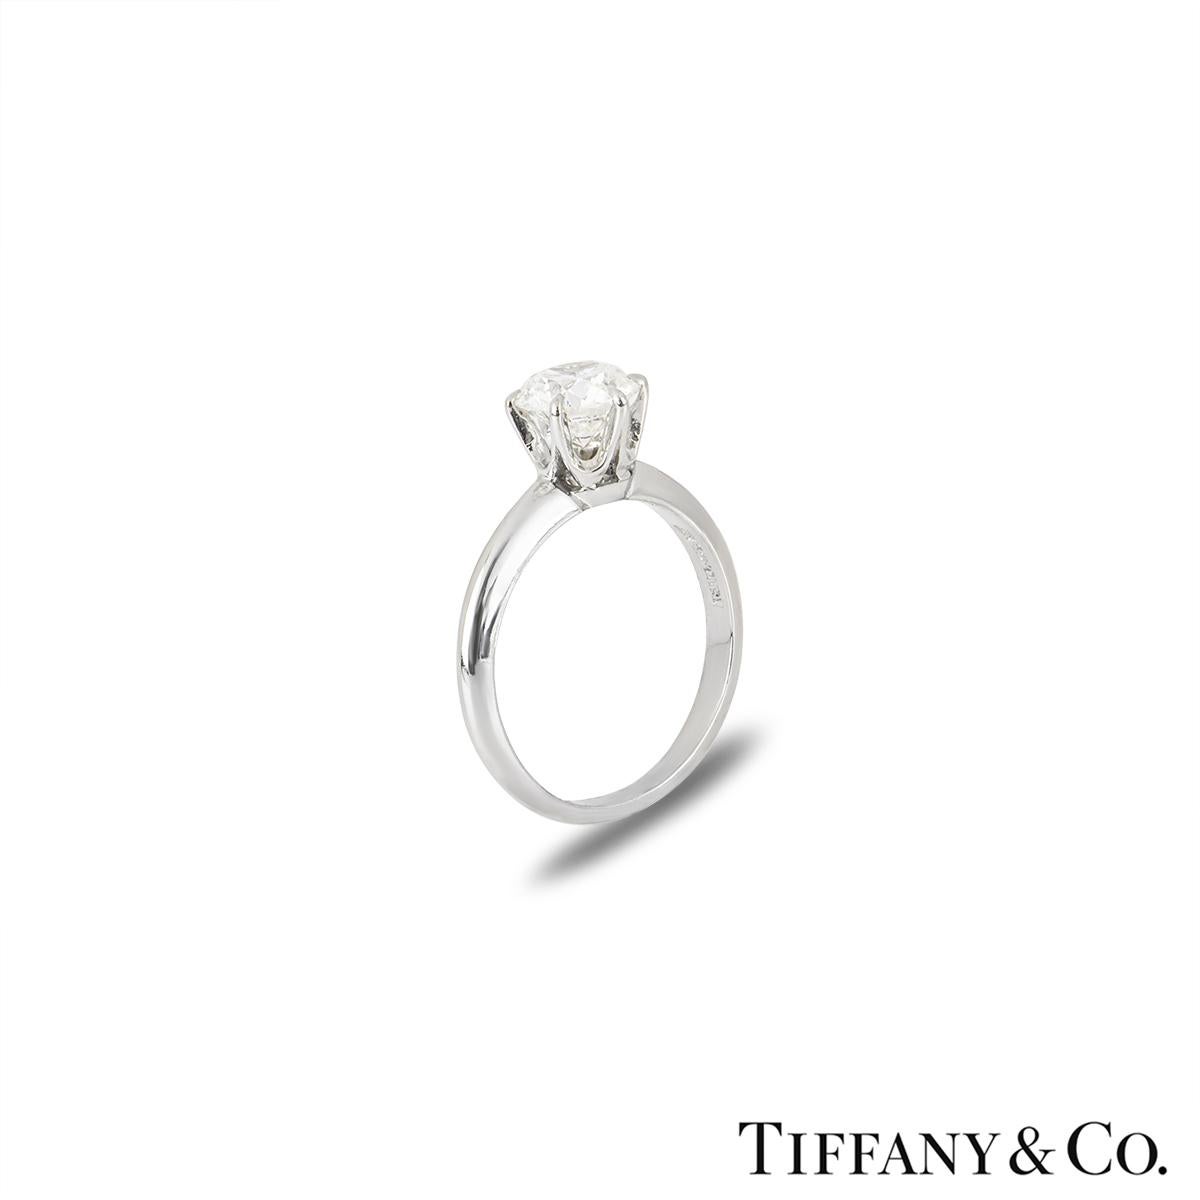 Ein wunderschöner Platin-Diamantring von Tiffany & Co. aus der Setting Collection. Der Ring besteht aus einem runden Diamanten im Brillantschliff in einer 6-Krallen-Fassung mit einem Gewicht von 1,10ct, Farbe I und Reinheit VVS2. Der Diamant erhält